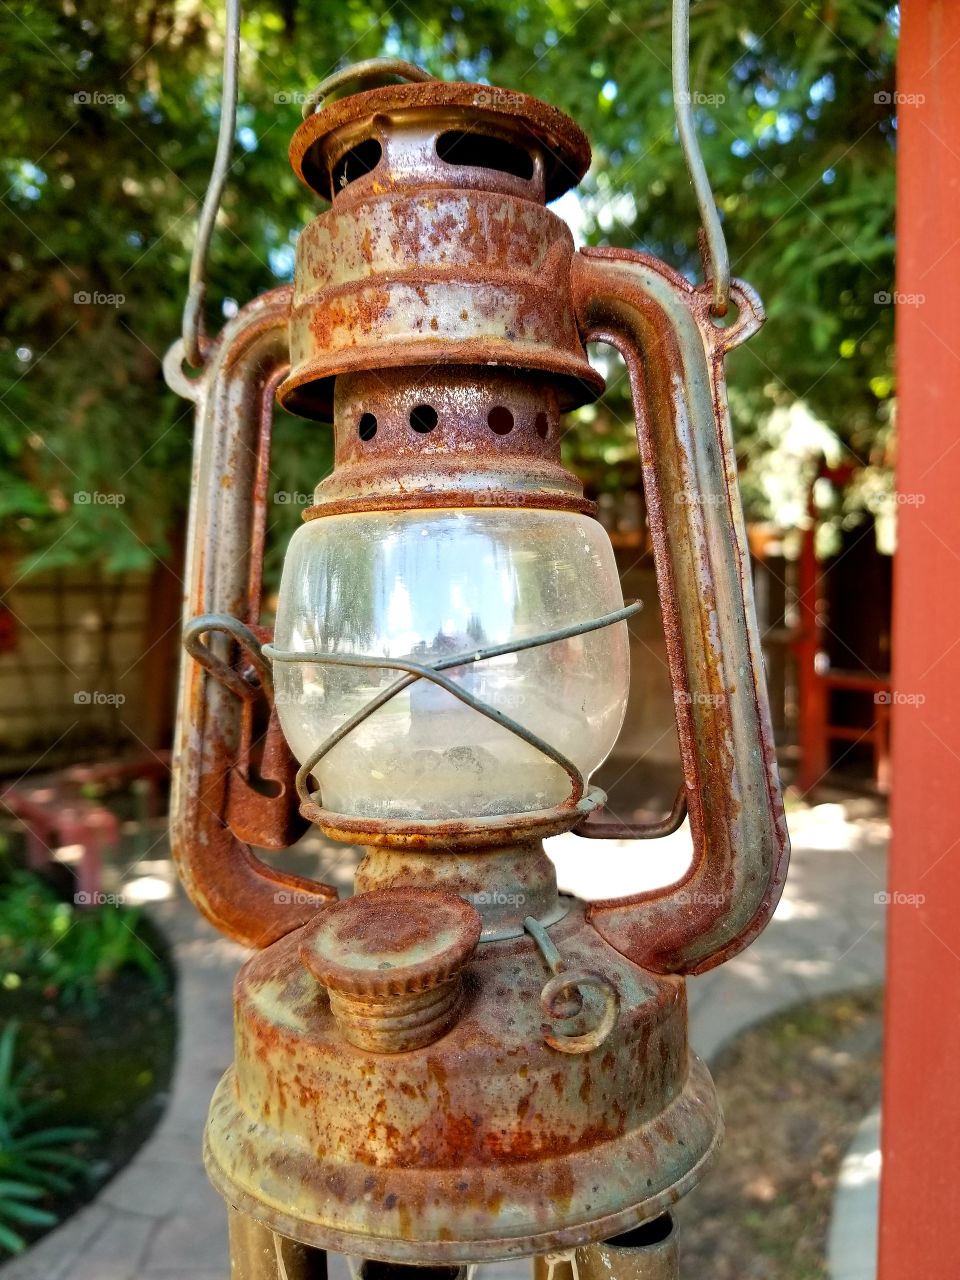 Antique, Rustic Lantern